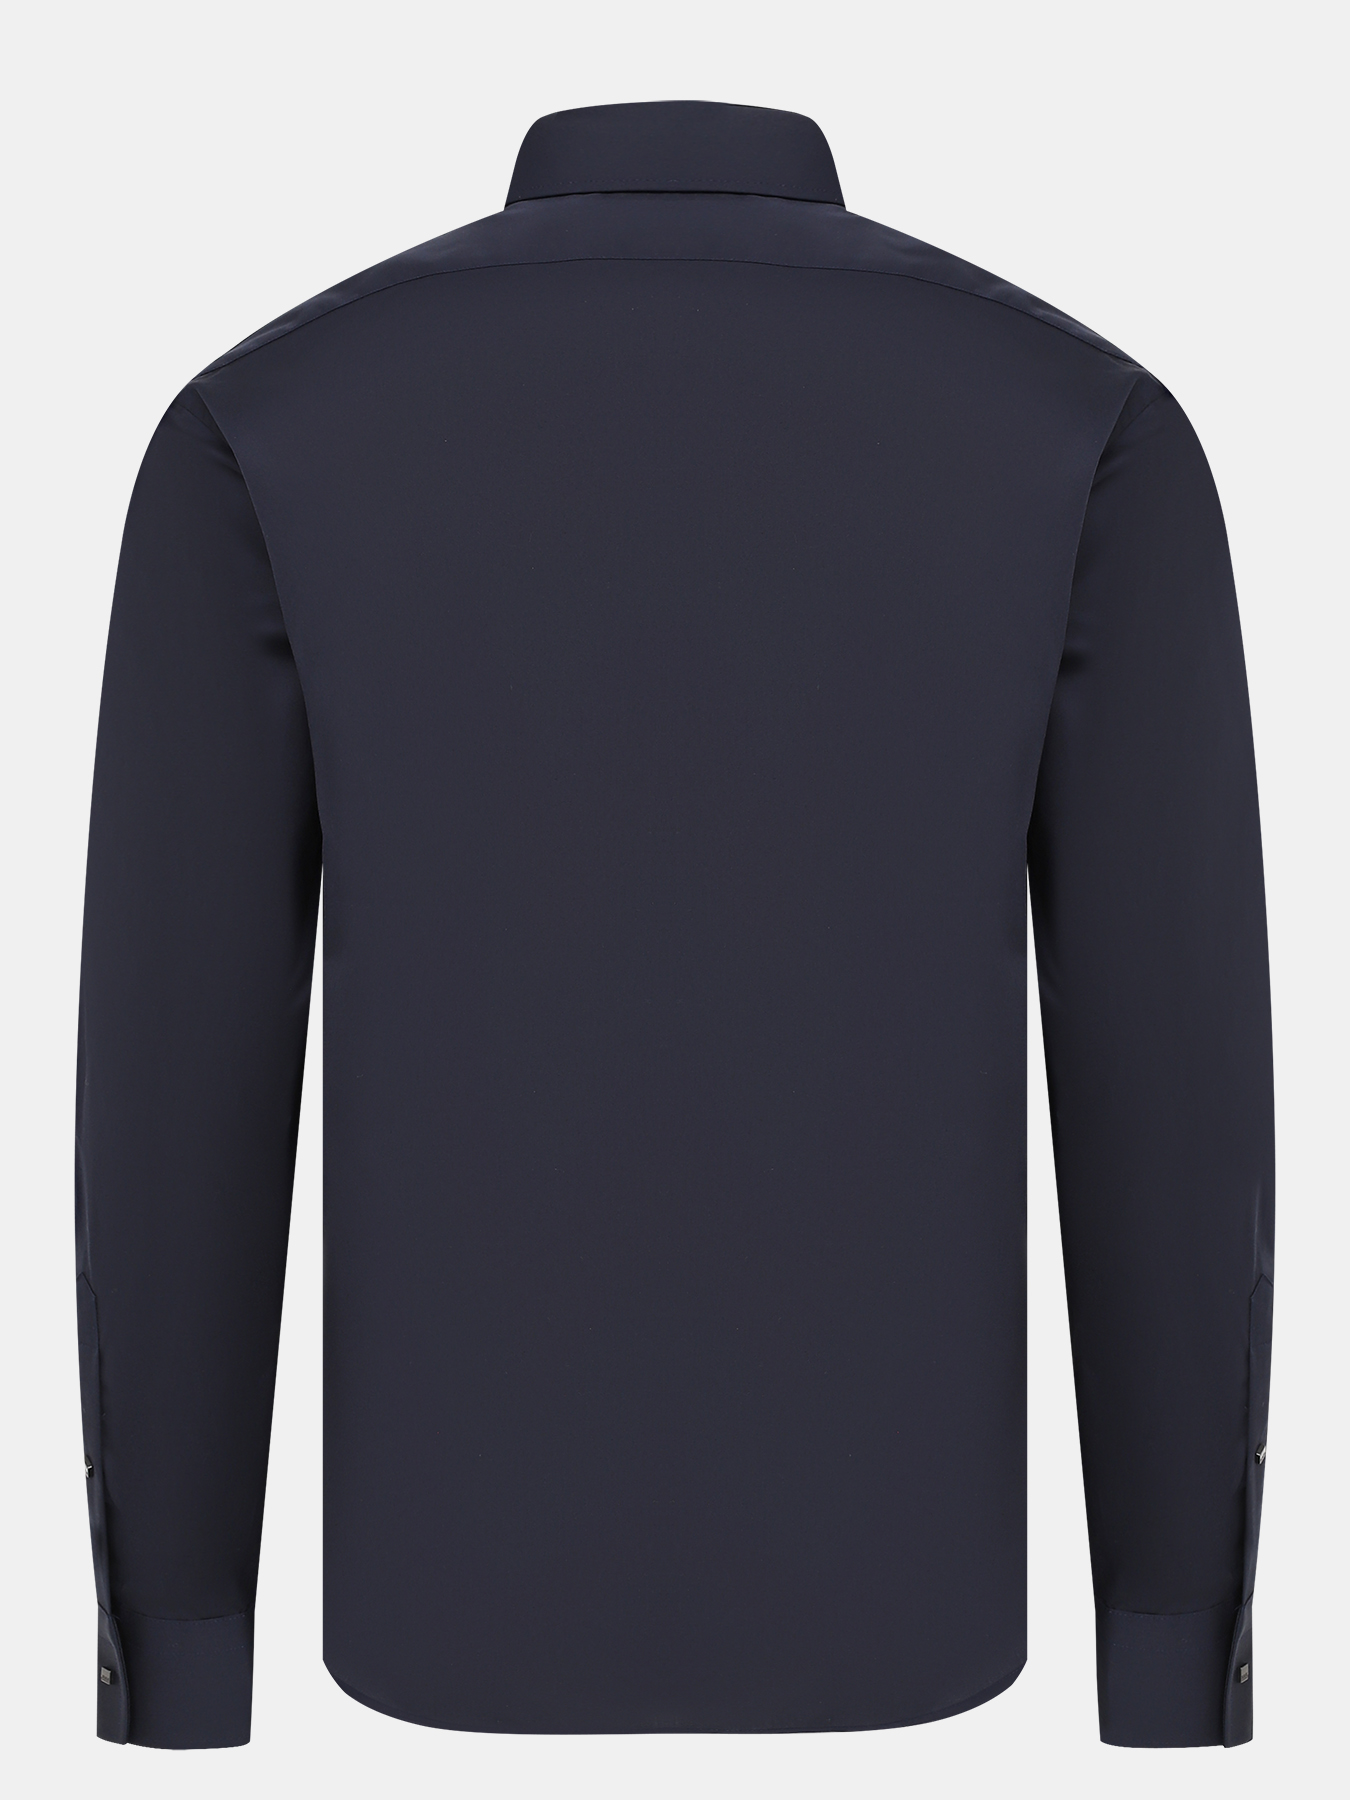 Рубашка Karl Lagerfeld 431011-049, цвет темно-синий, размер 48 - фото 2